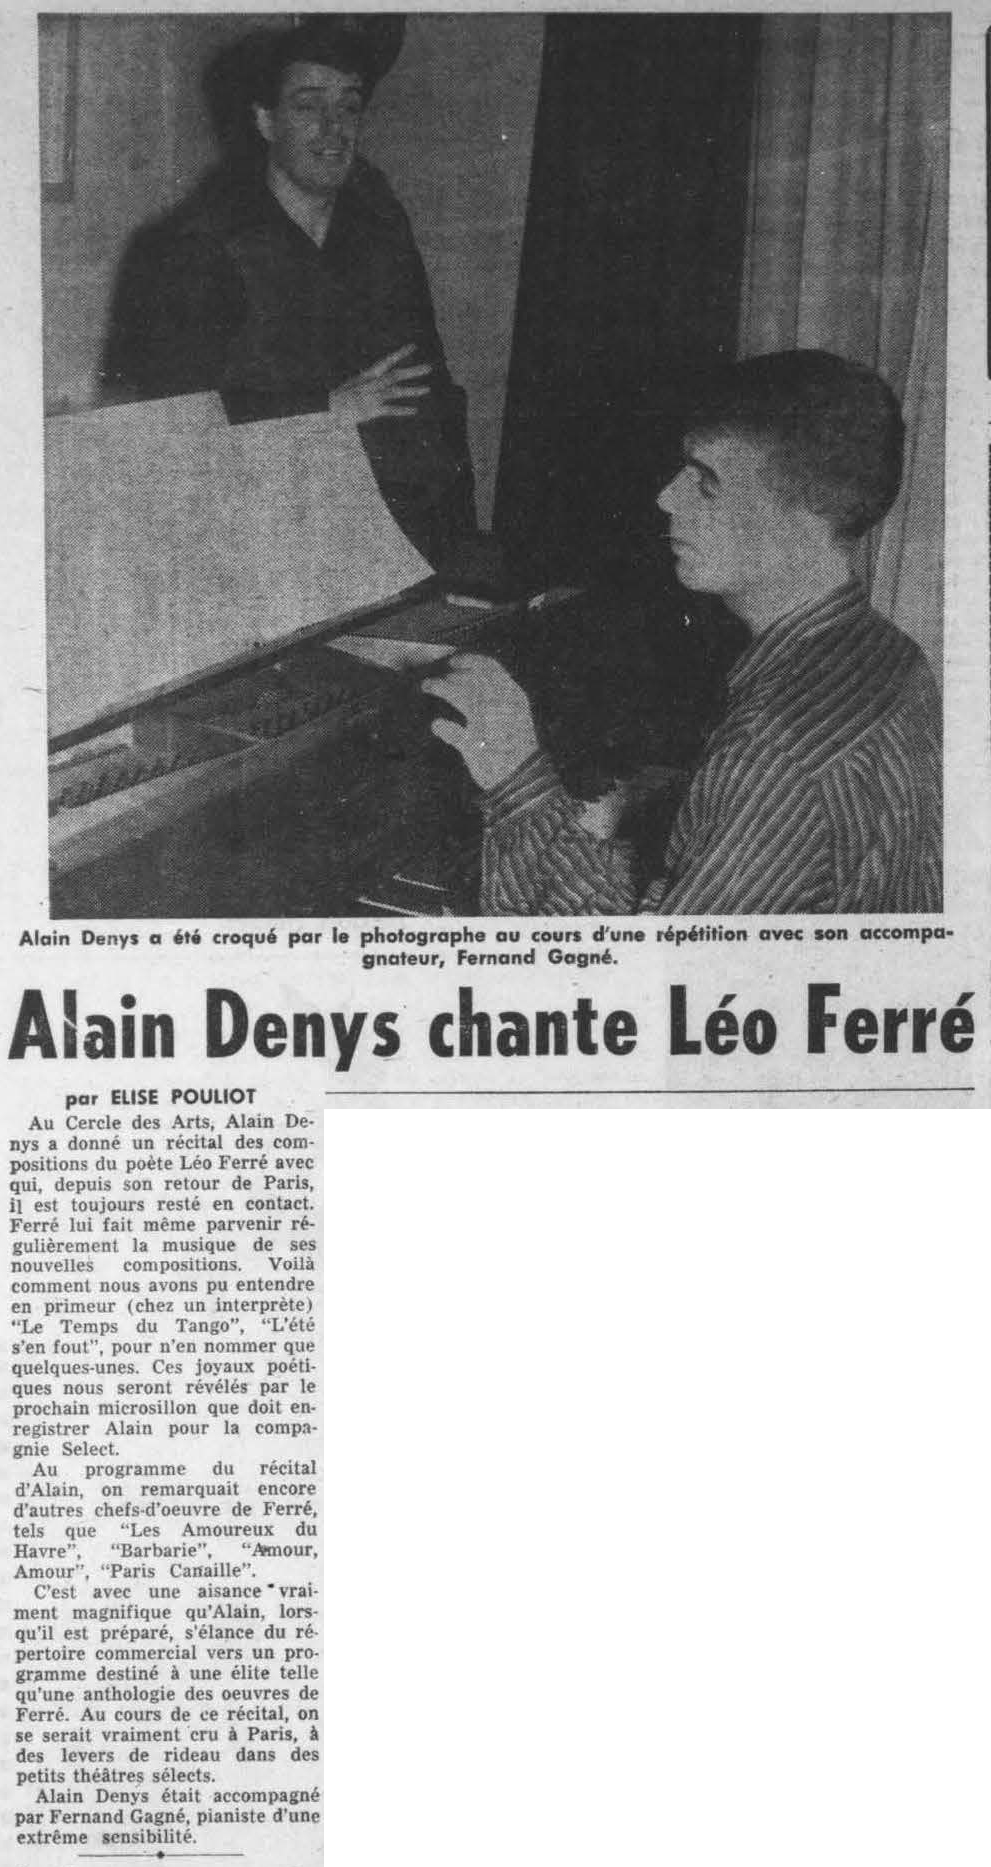 Léo Ferré - Radiomonde et télémonde, 1952-1960, samedi 26 décembre 1959